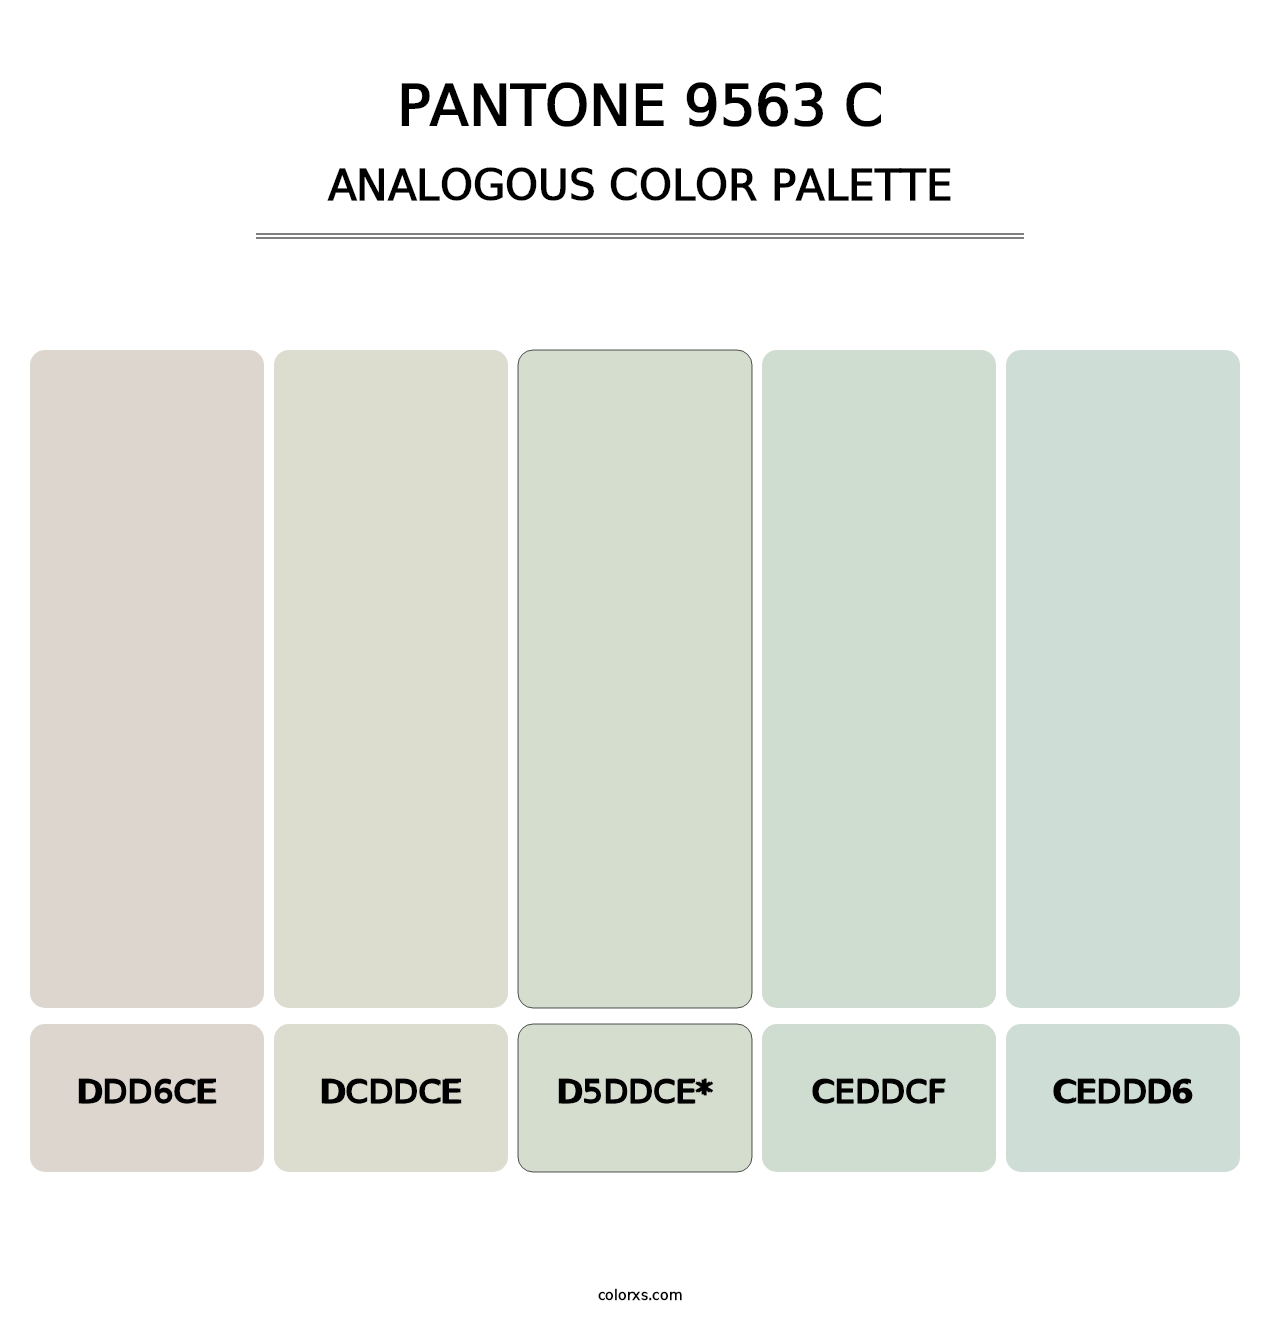 PANTONE 9563 C - Analogous Color Palette